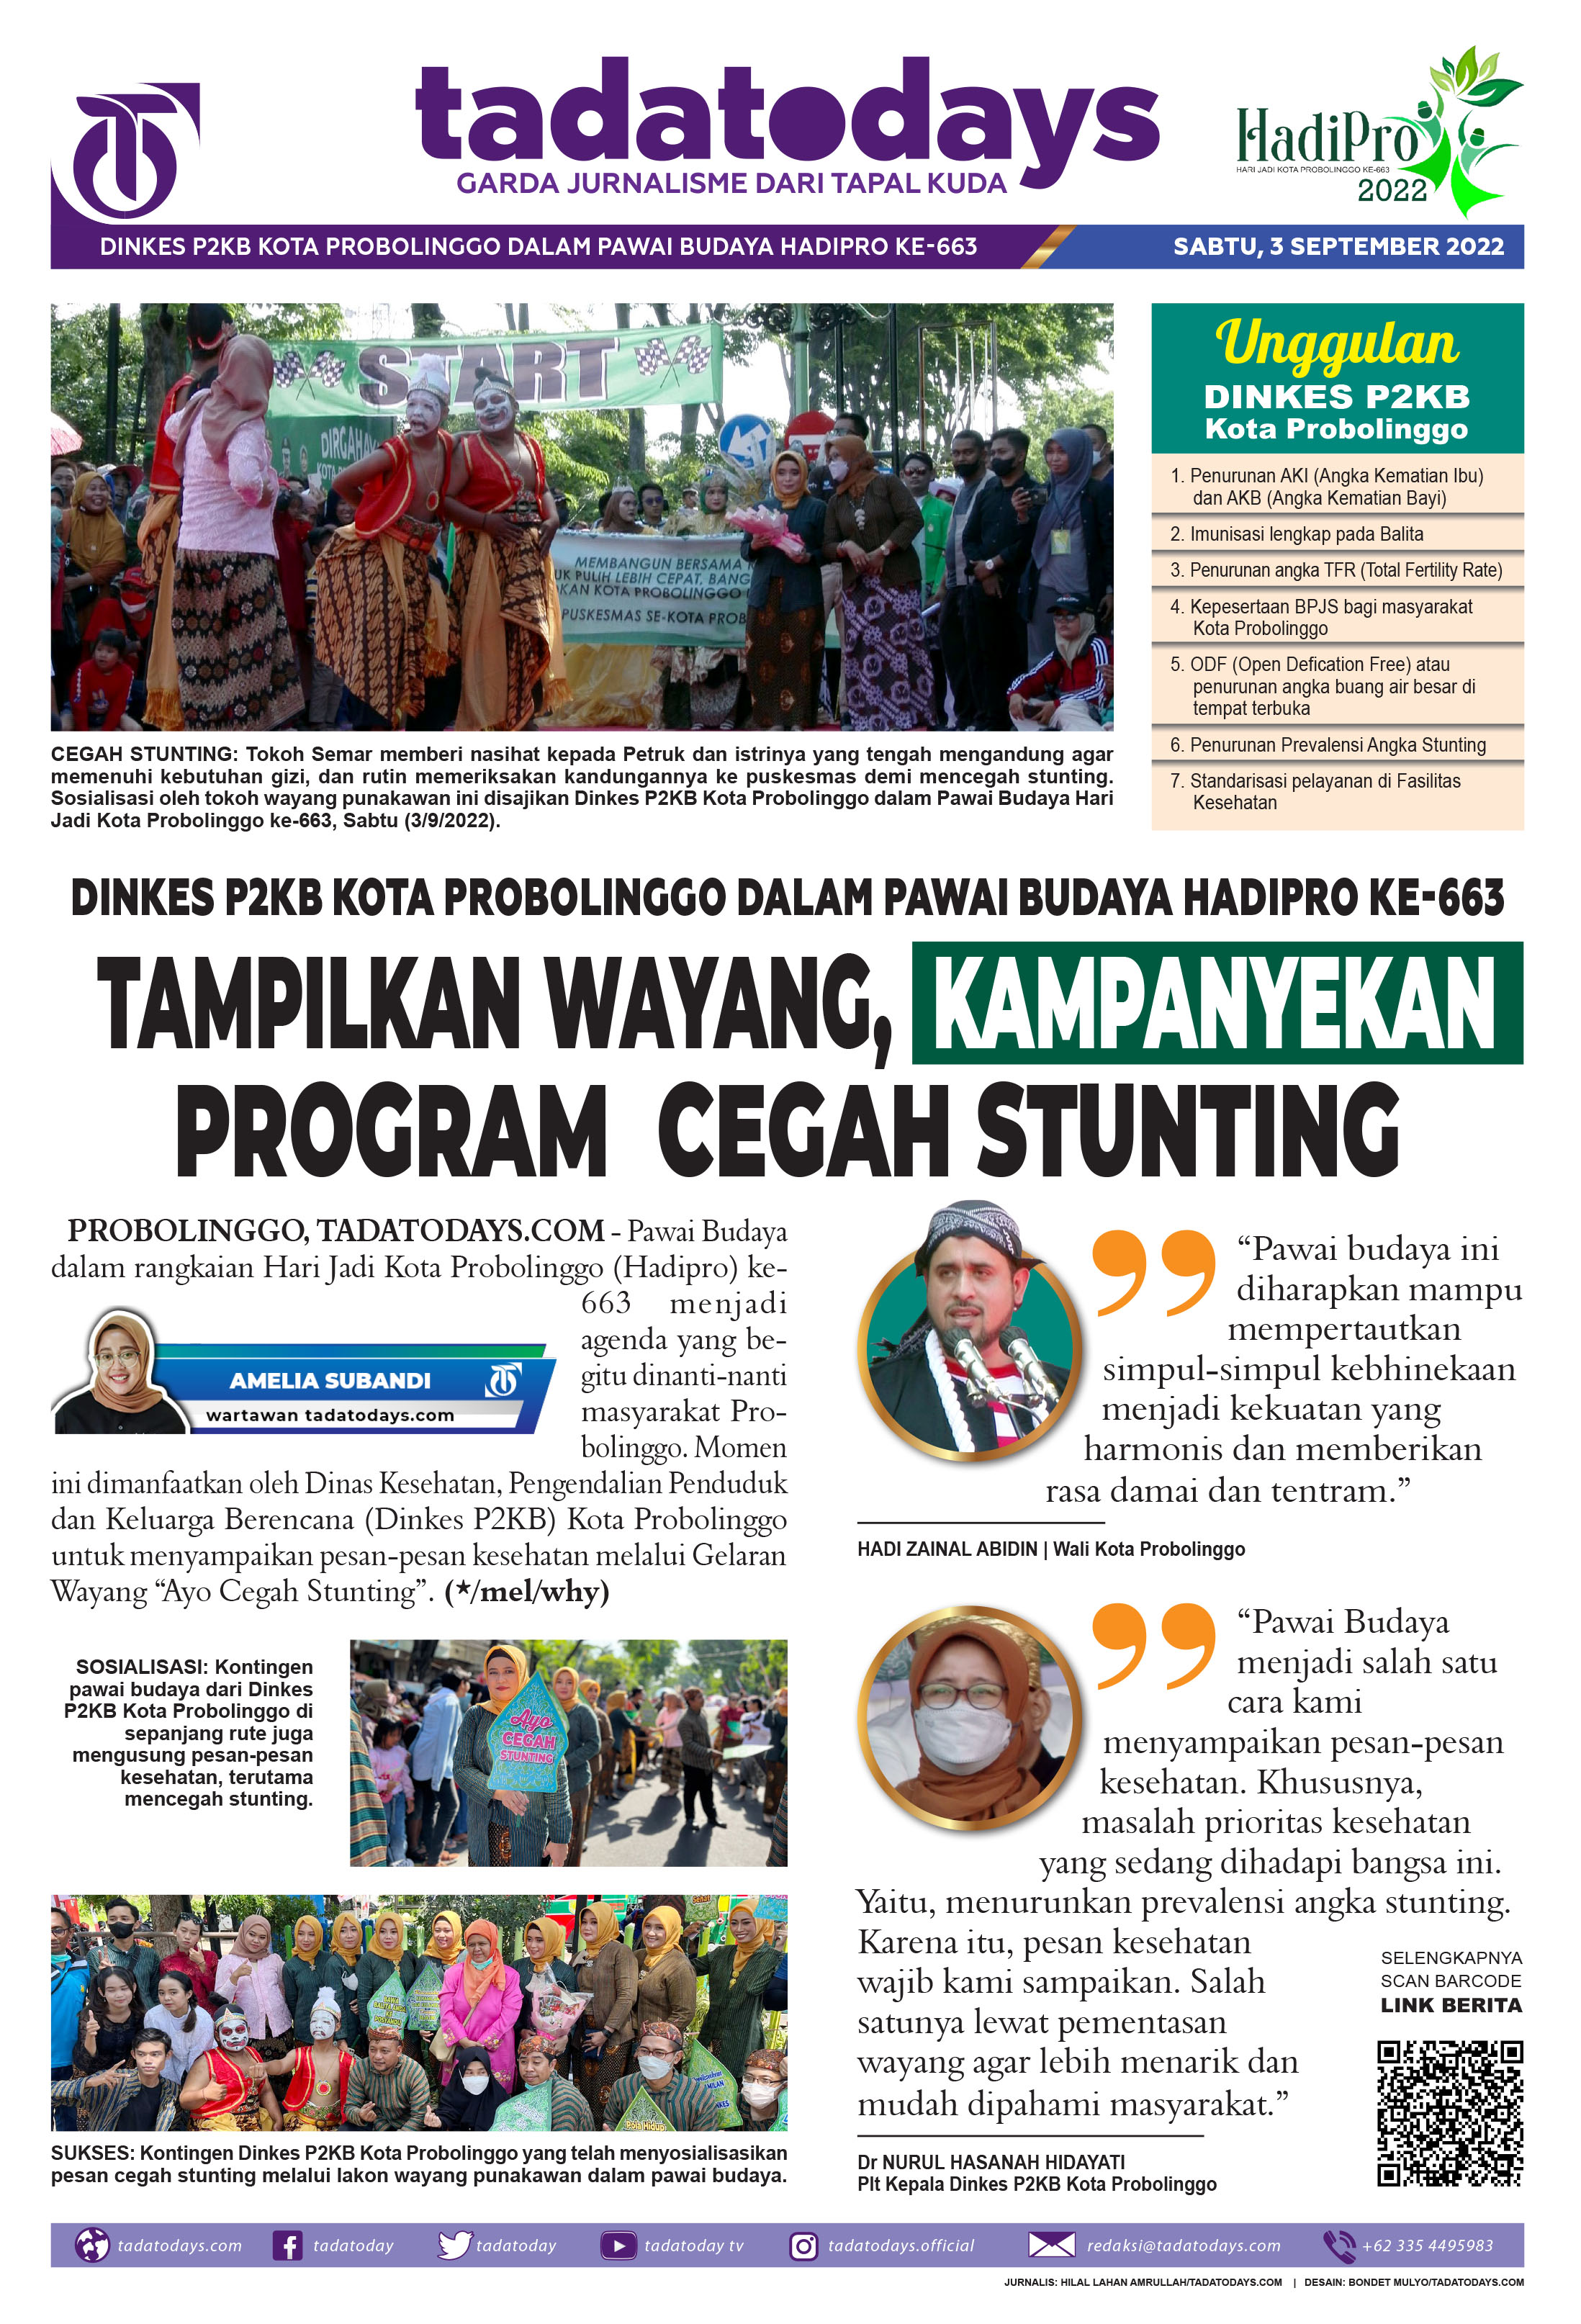 Dinkes P2KB Kota Probolinggo dalam Pawai Budaya Hadipro ke-663; Tampilkan Wayang, Kampanyekan Program Pencegahan Stunting